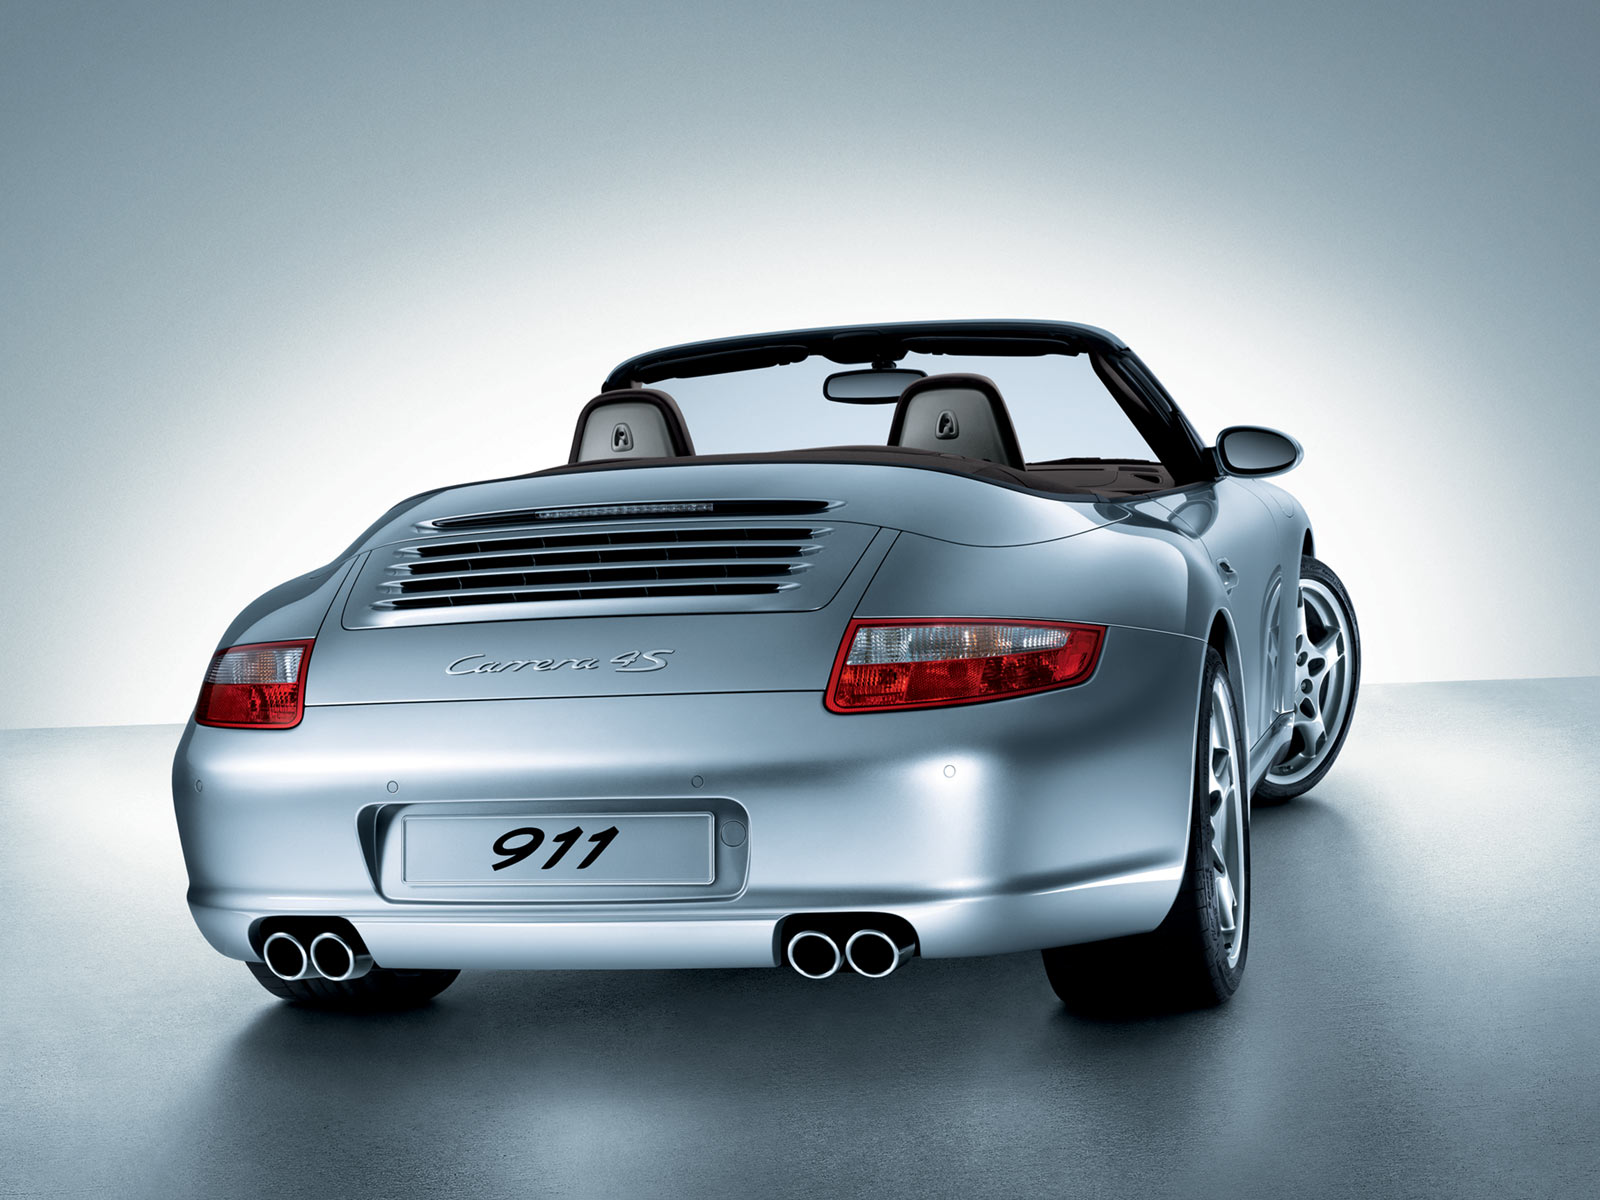 Porsche · 911 Cabriolet · 997 · Bj 2005-2012 > Autoplane 